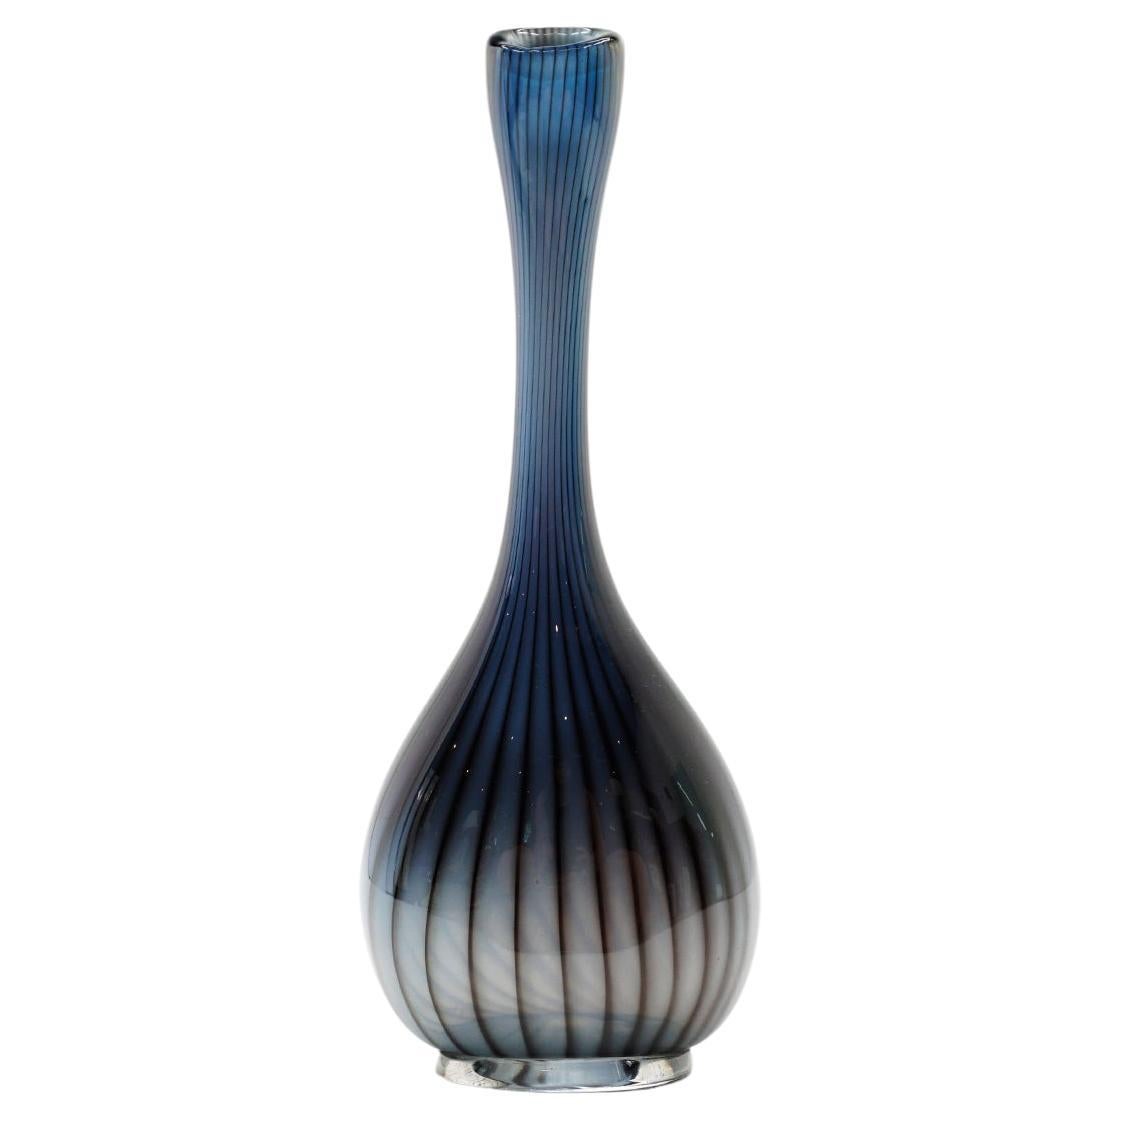 Vicke Lindstrand "Colora" Series for Kosta Blue Bud Glass Vase. Sweden, 1950s